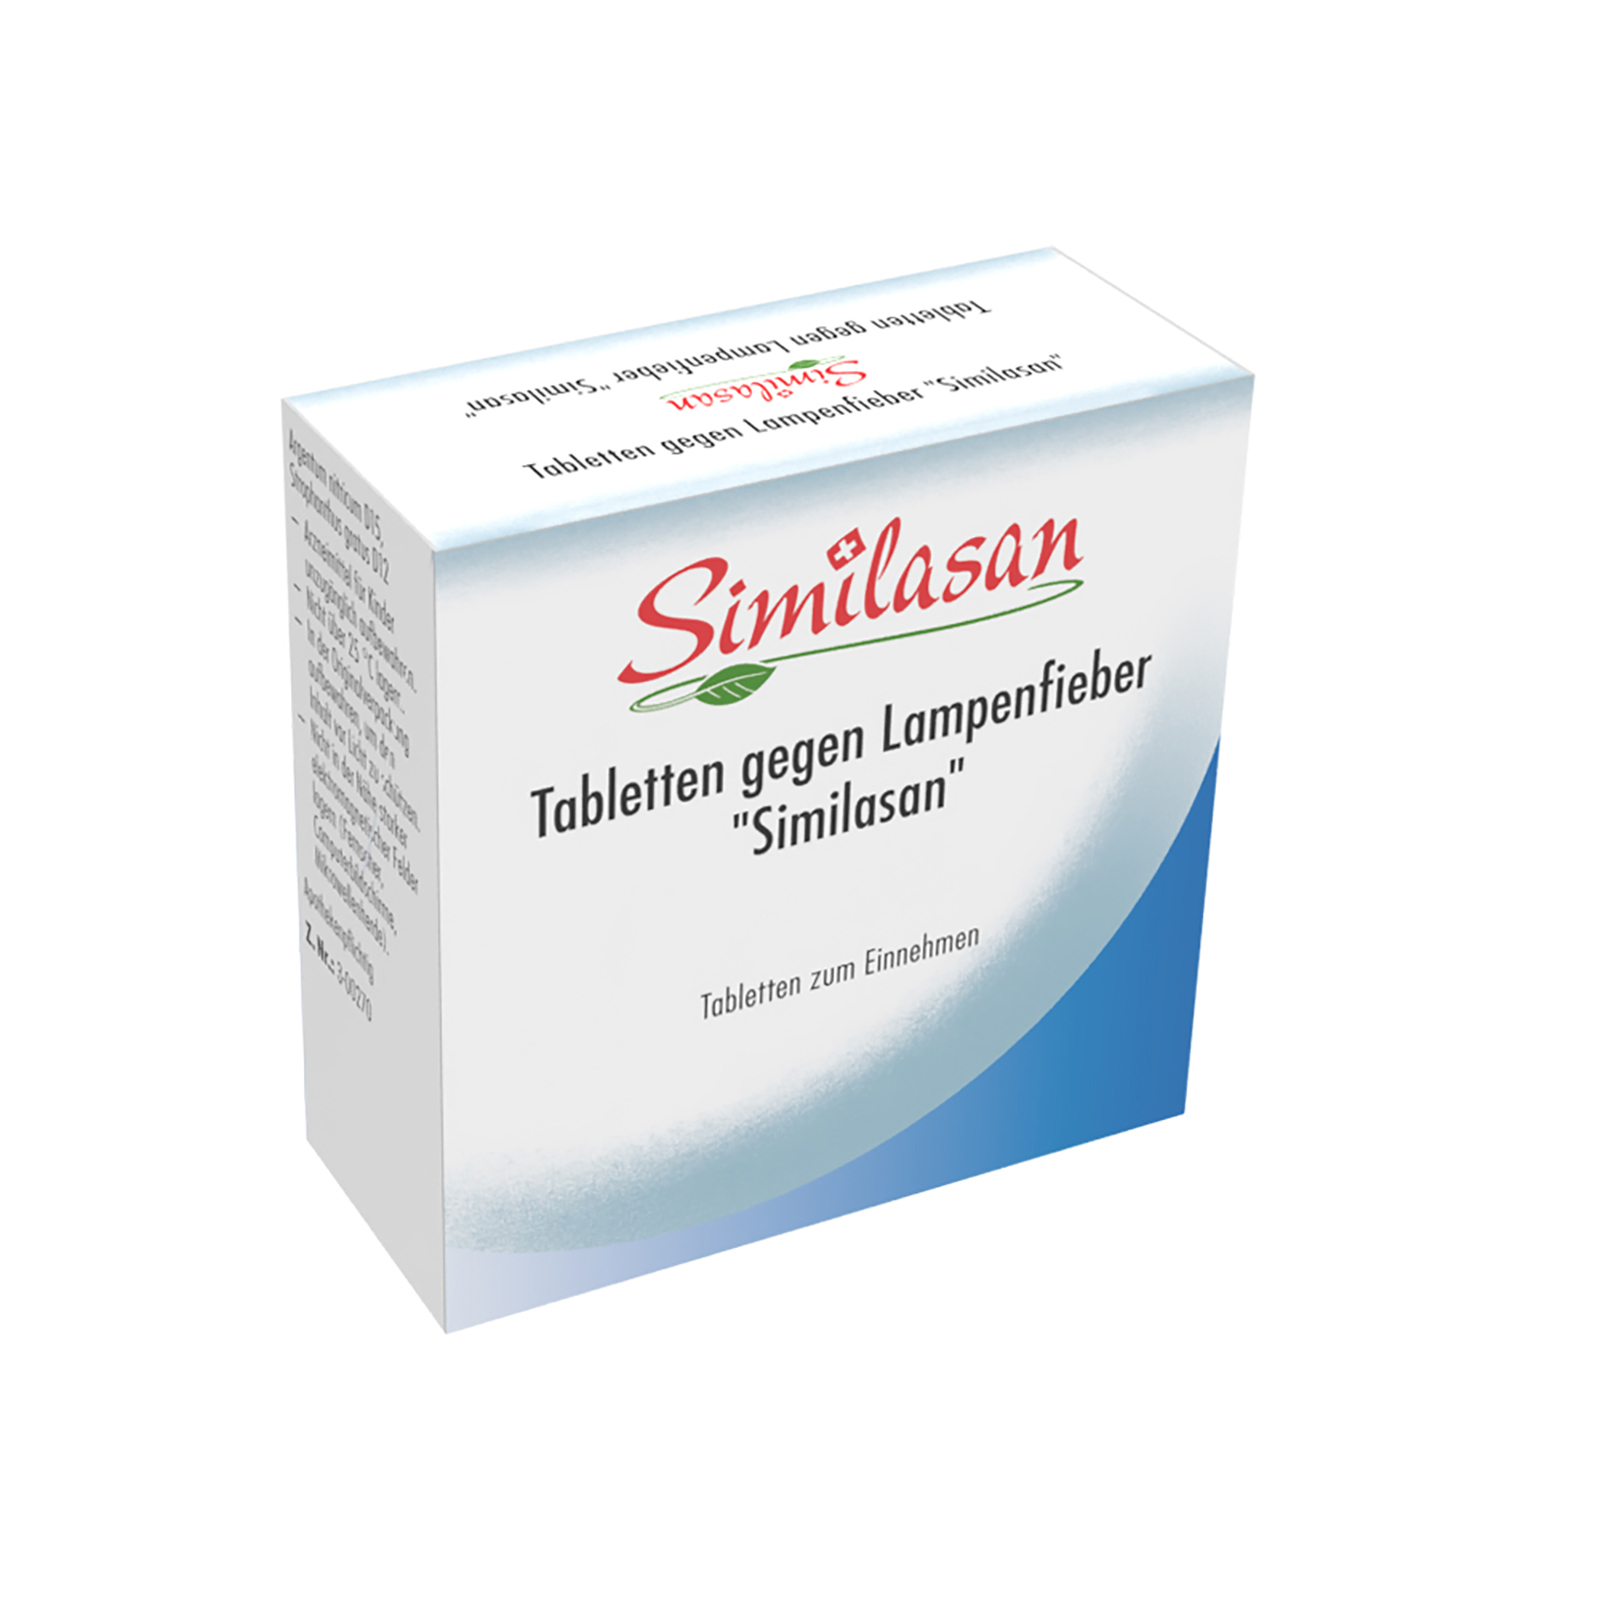 Tabletten gegen Lampenfieber „Similasan“